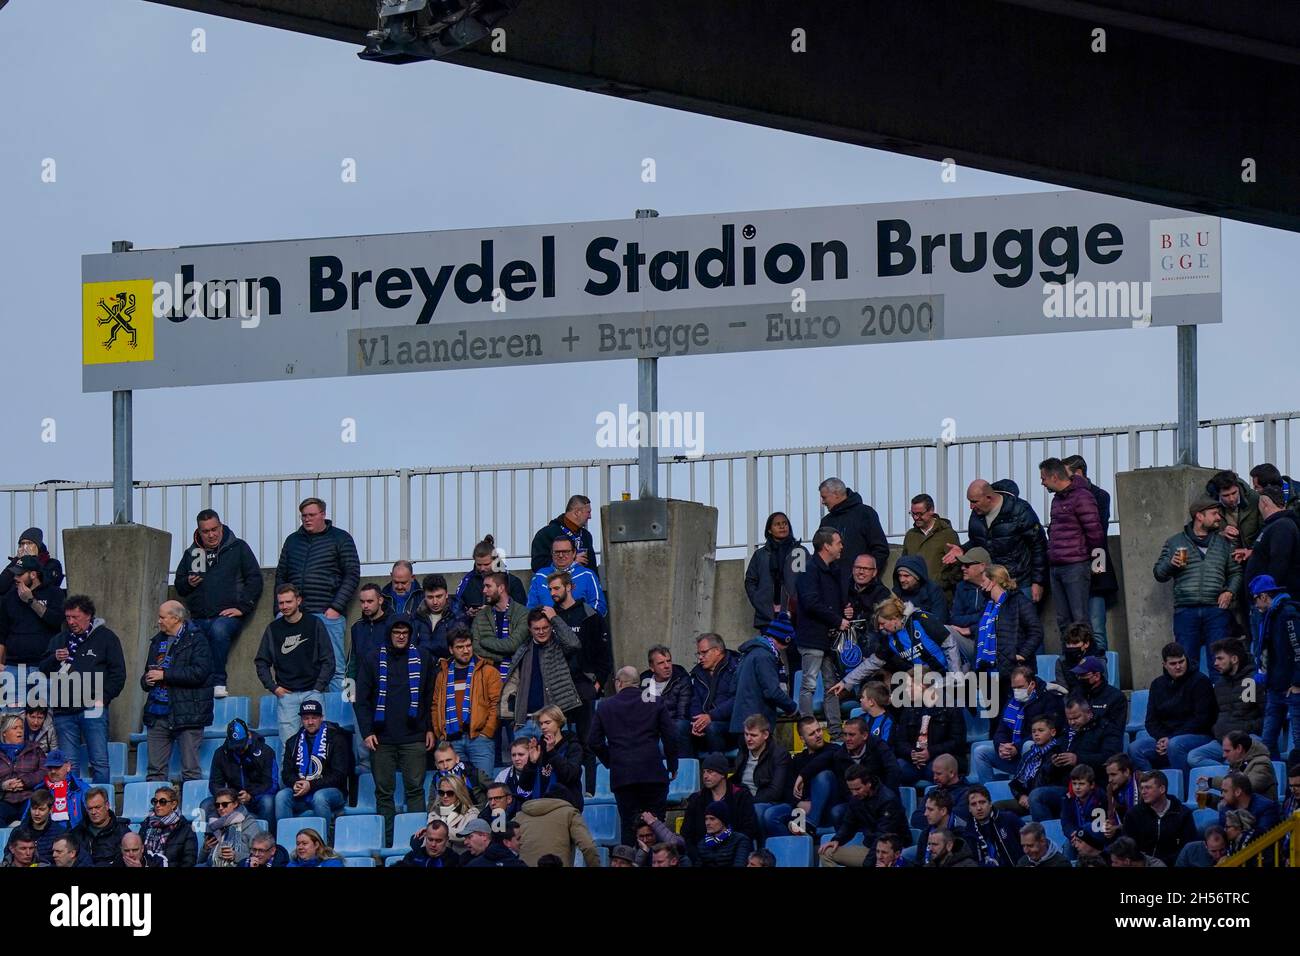 BRUGGE, BELGIUM - NOVEMBER 7: Club Brugge fans during the Jupiler